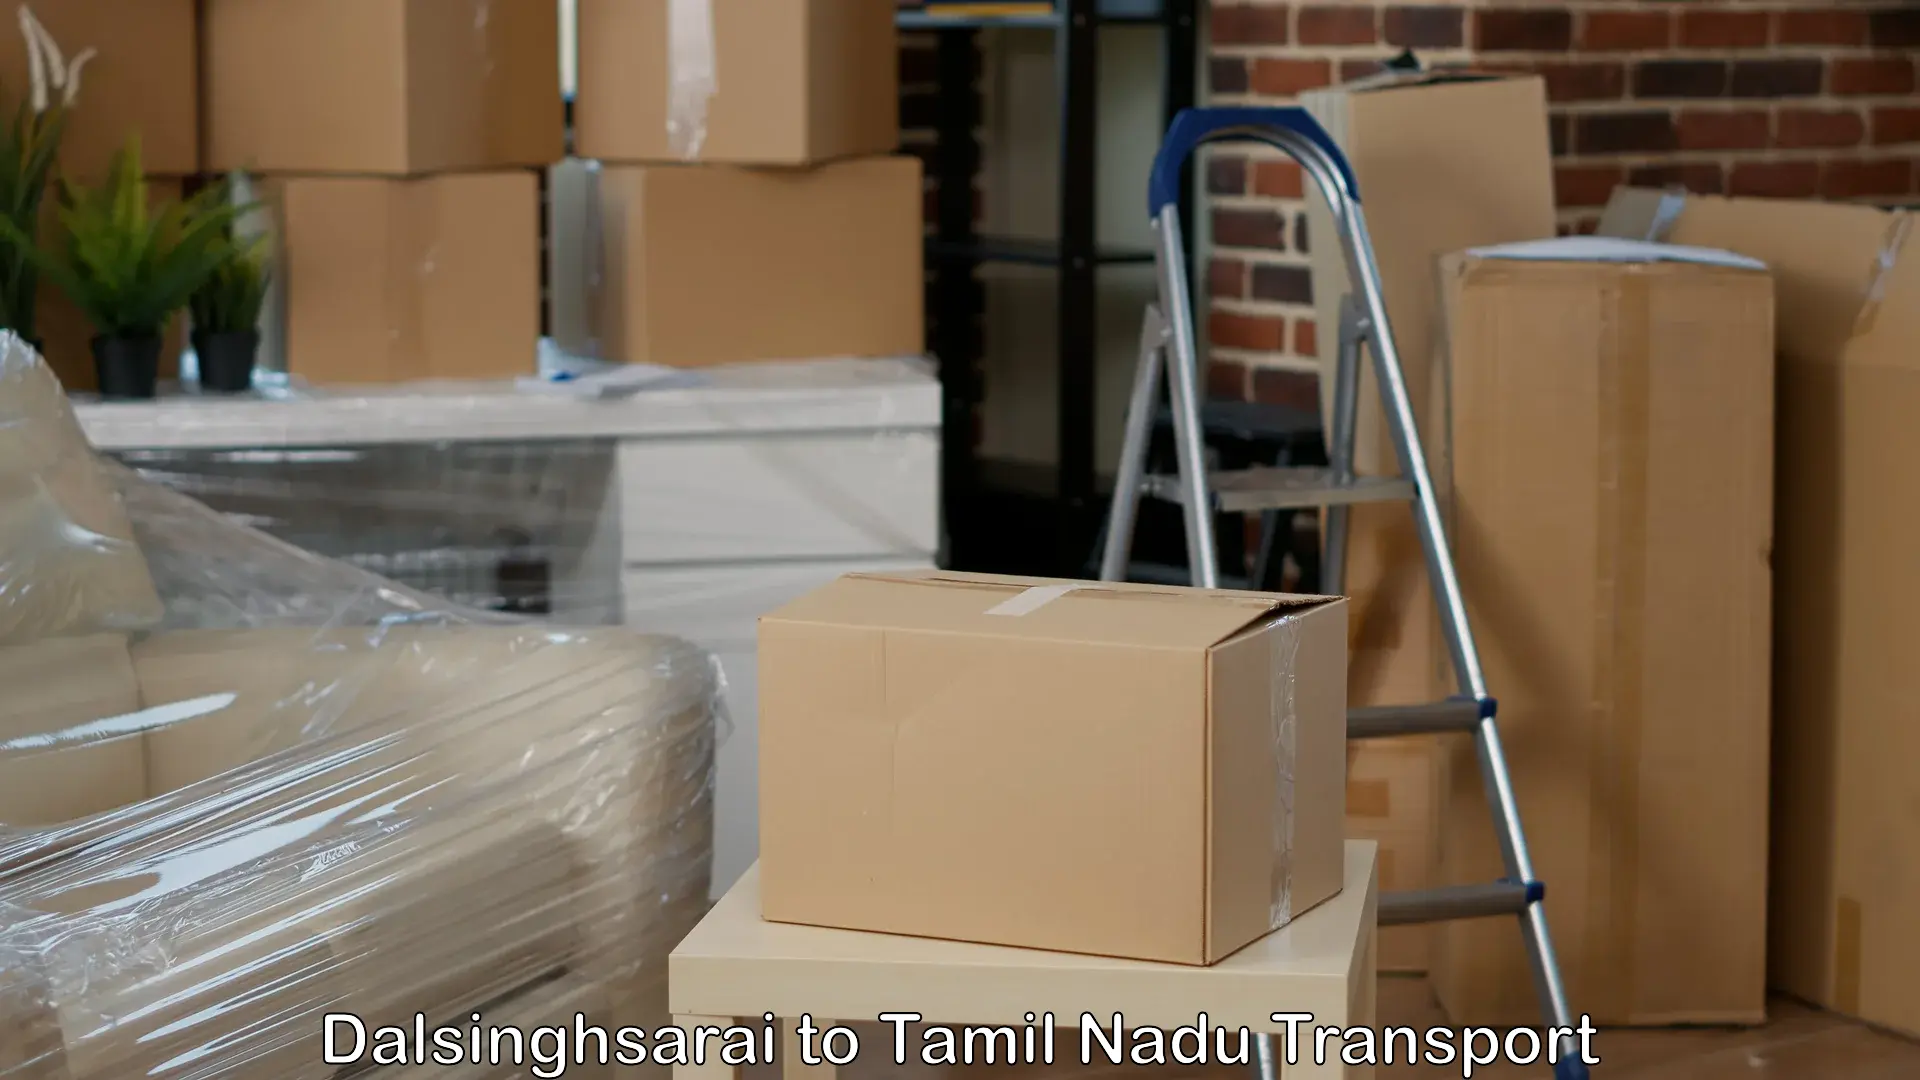 Furniture transport service Dalsinghsarai to Annur